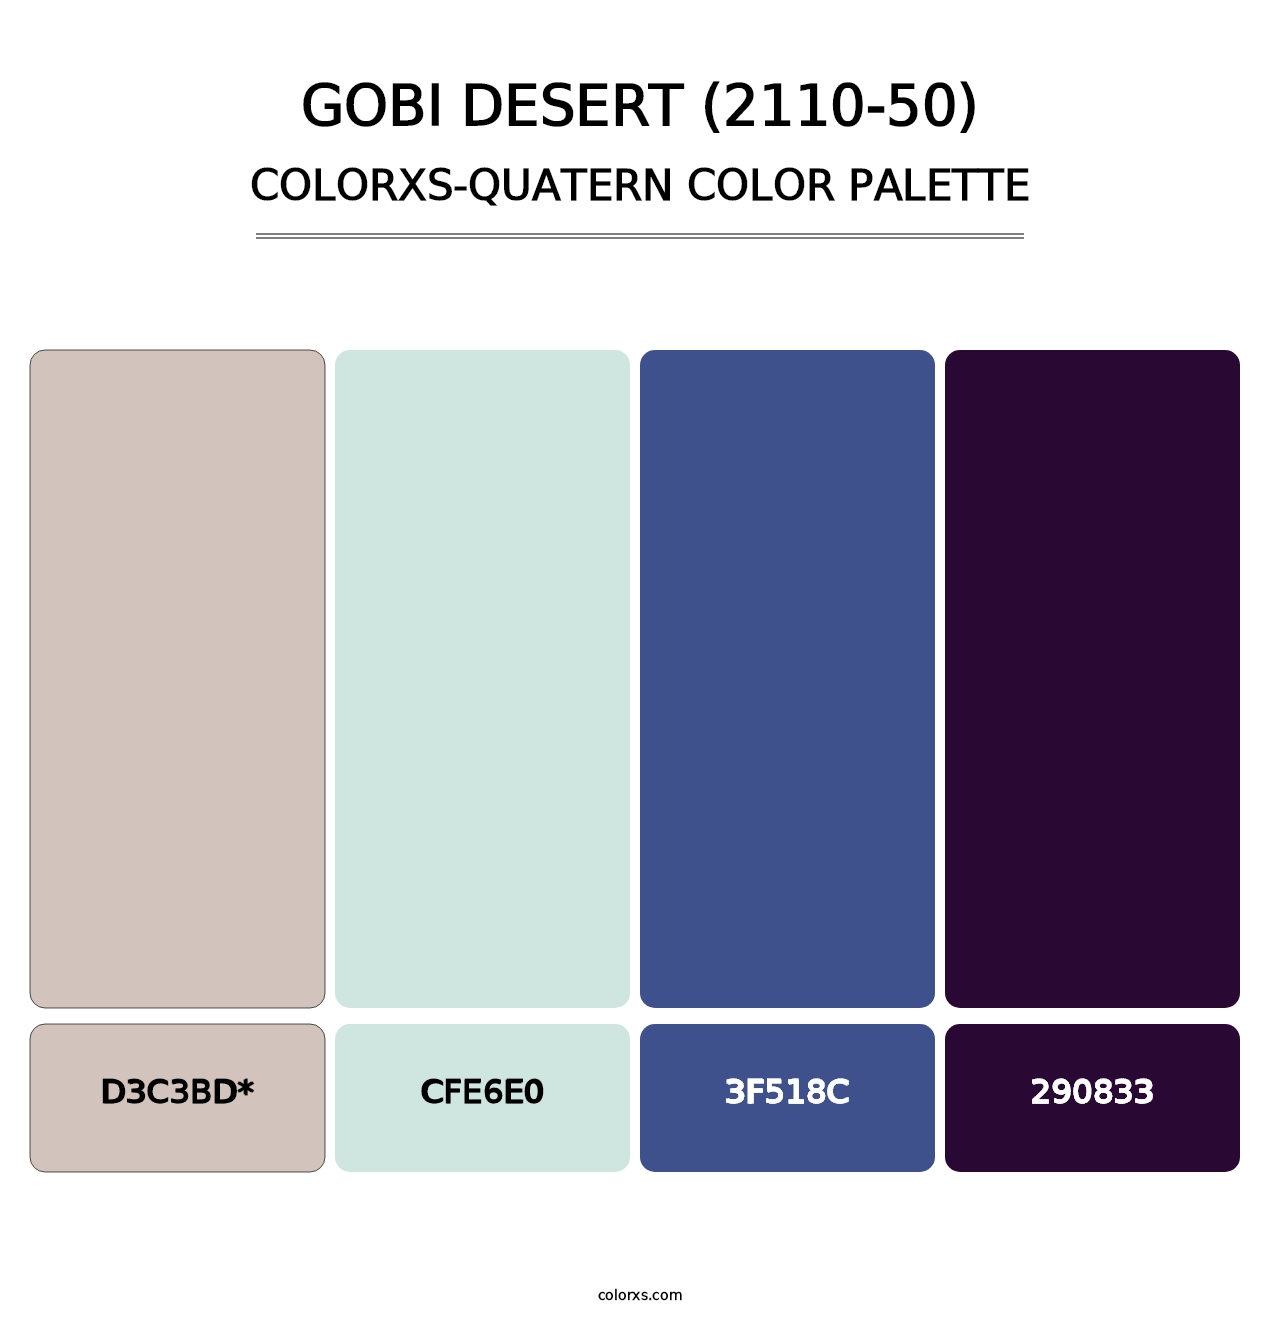 Gobi Desert (2110-50) - Colorxs Quatern Palette